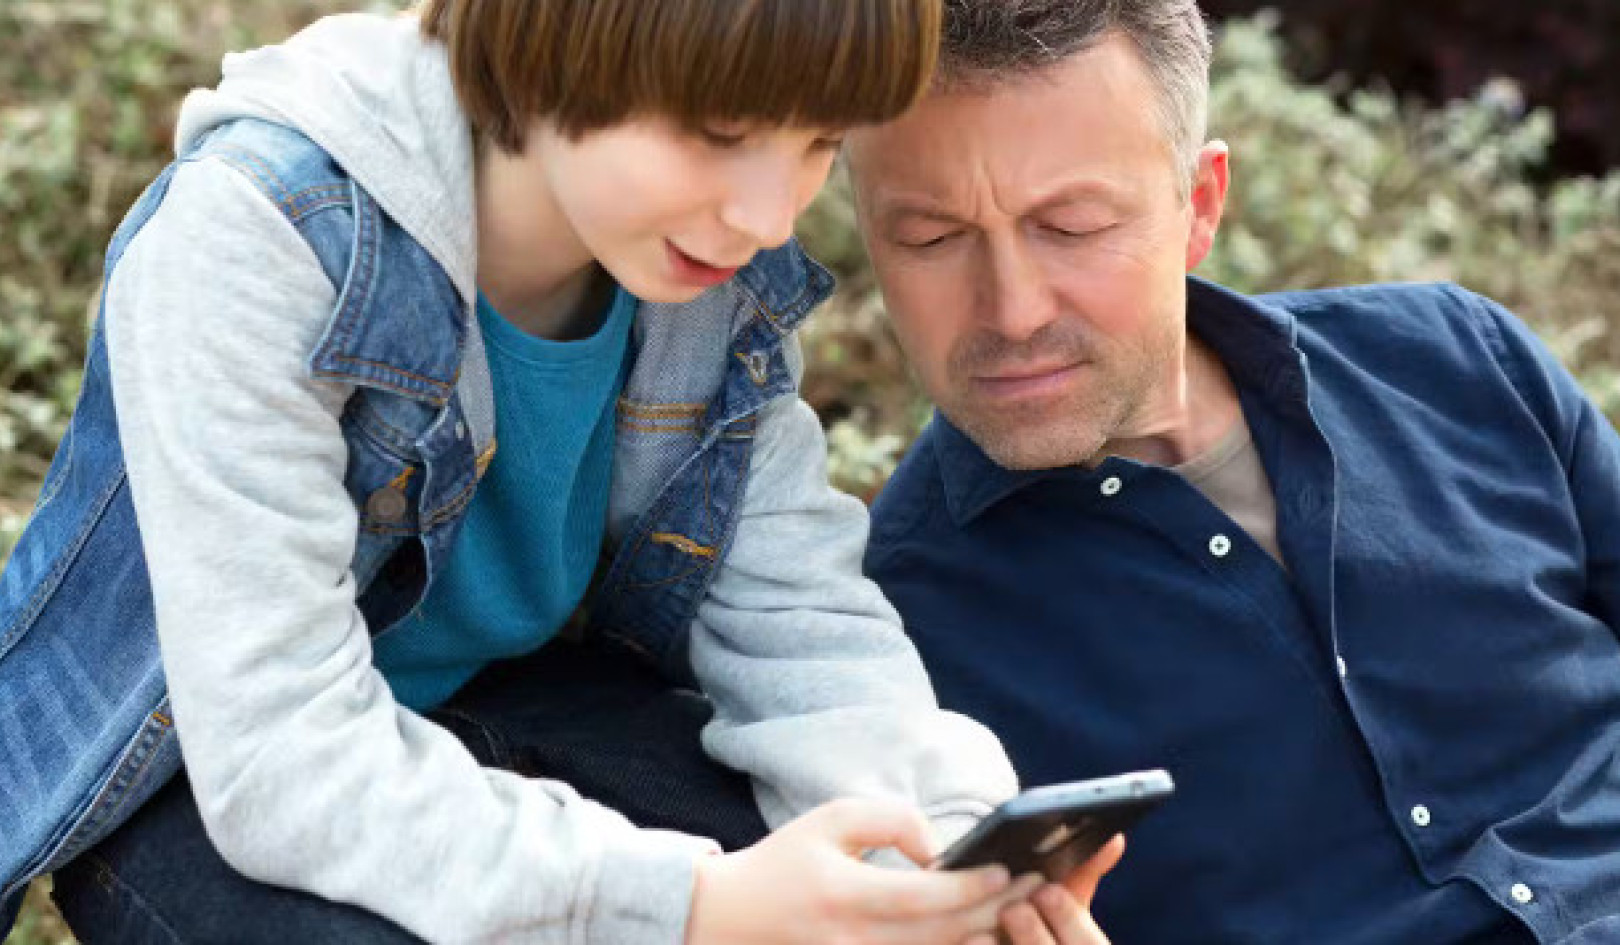 어린이를 위한 휴대폰: 적절한 연령과 안전의 균형 찾기